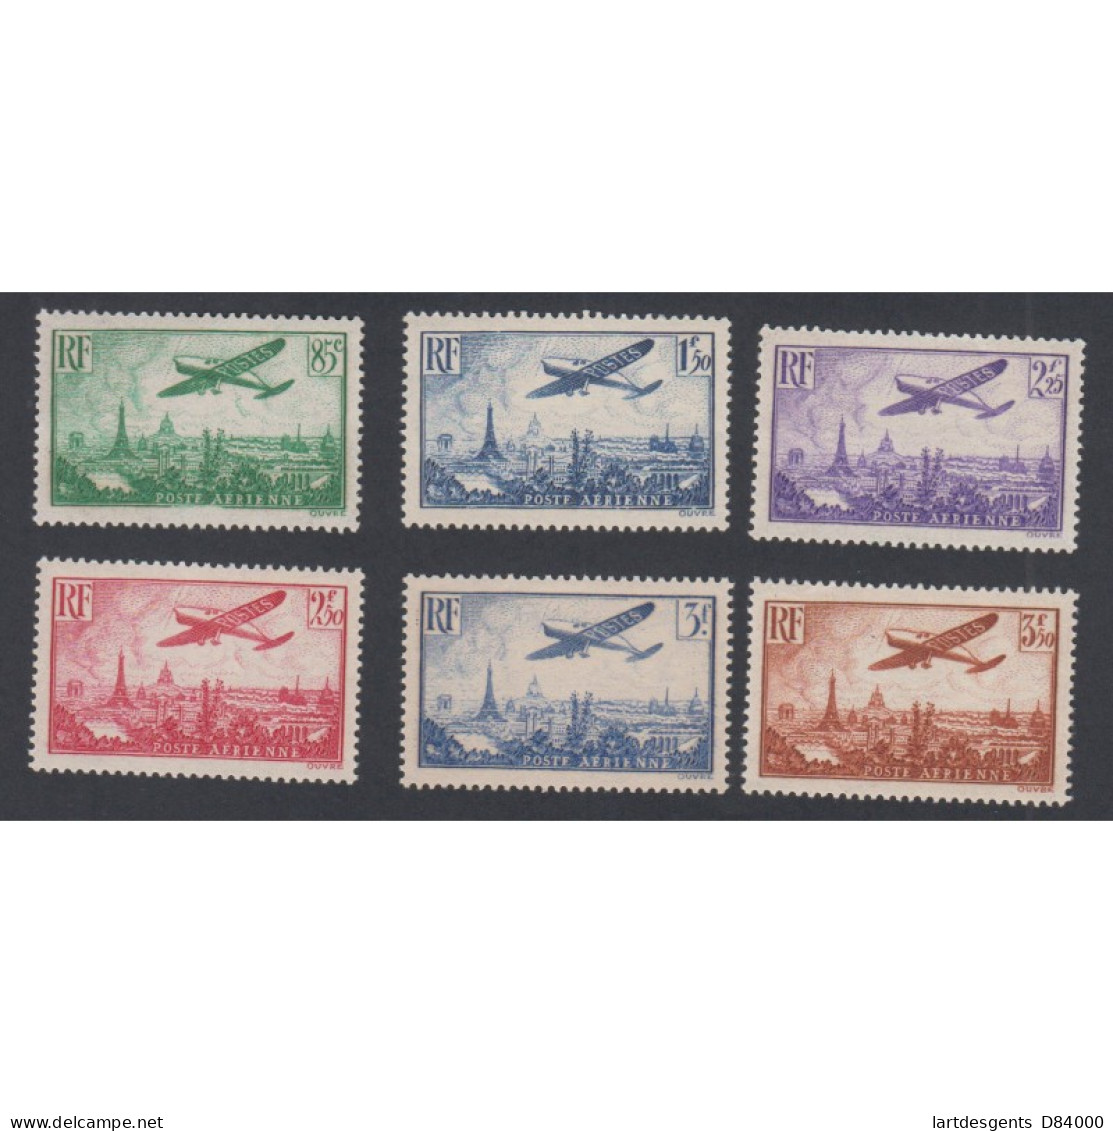 Timbres Poste Aérienne -  N°8 à N°13 - 1936 - Neufs** - Cote 300 Euros- Lartdesgents - 1927-1959 Nuovi